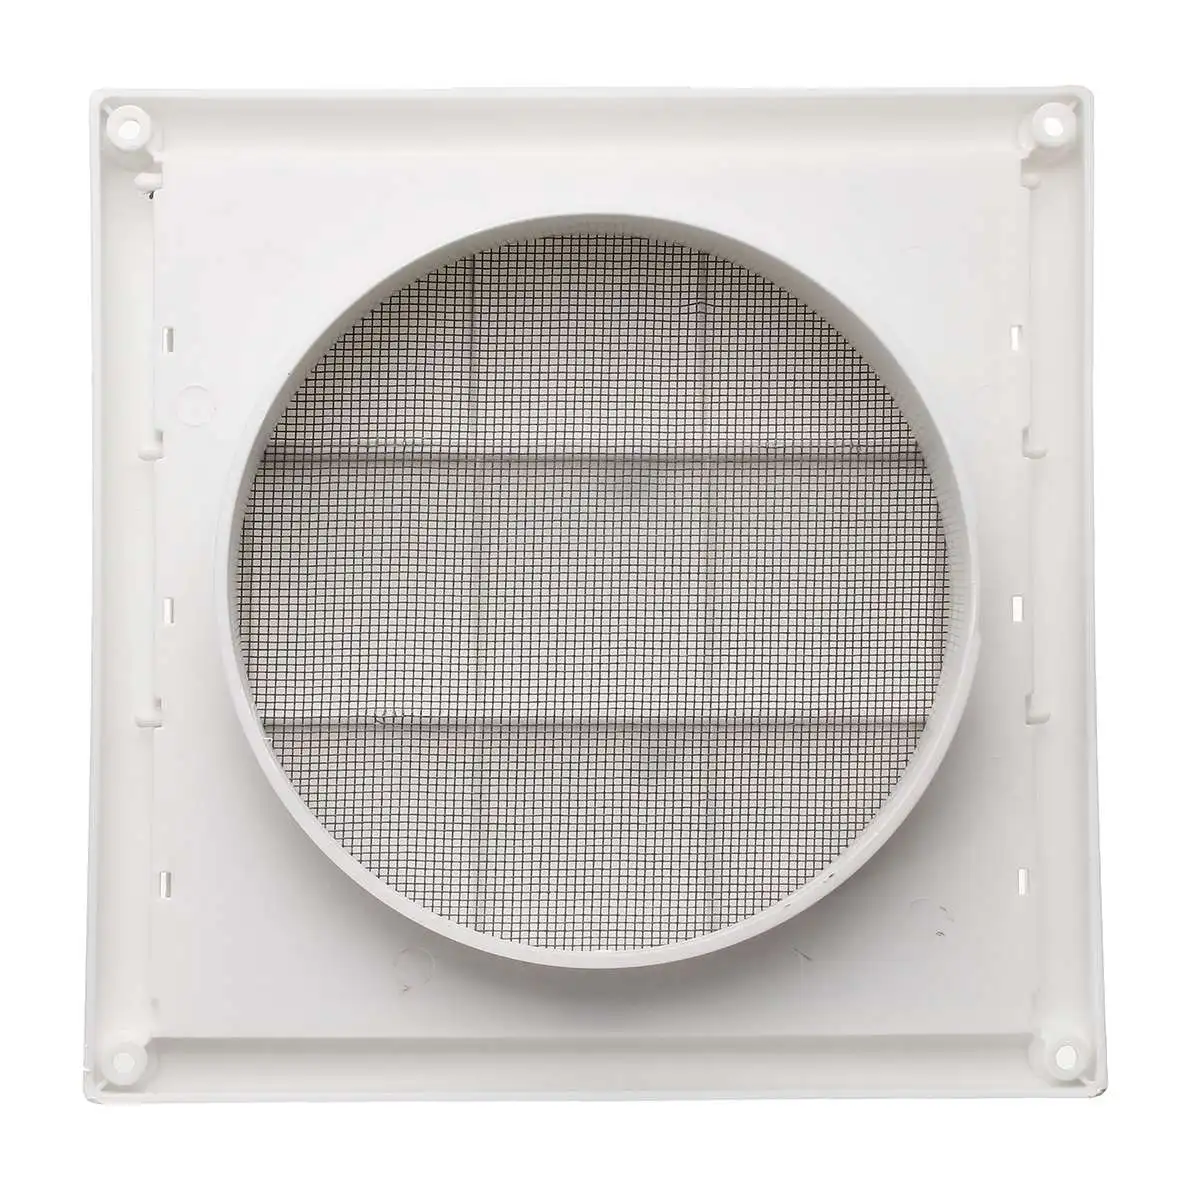 MTGATHER вентиляционная решетка вентиляционная крышка Пластик белые стены решетки канал 200x200x40 мм нагрева охлаждения и отверстия